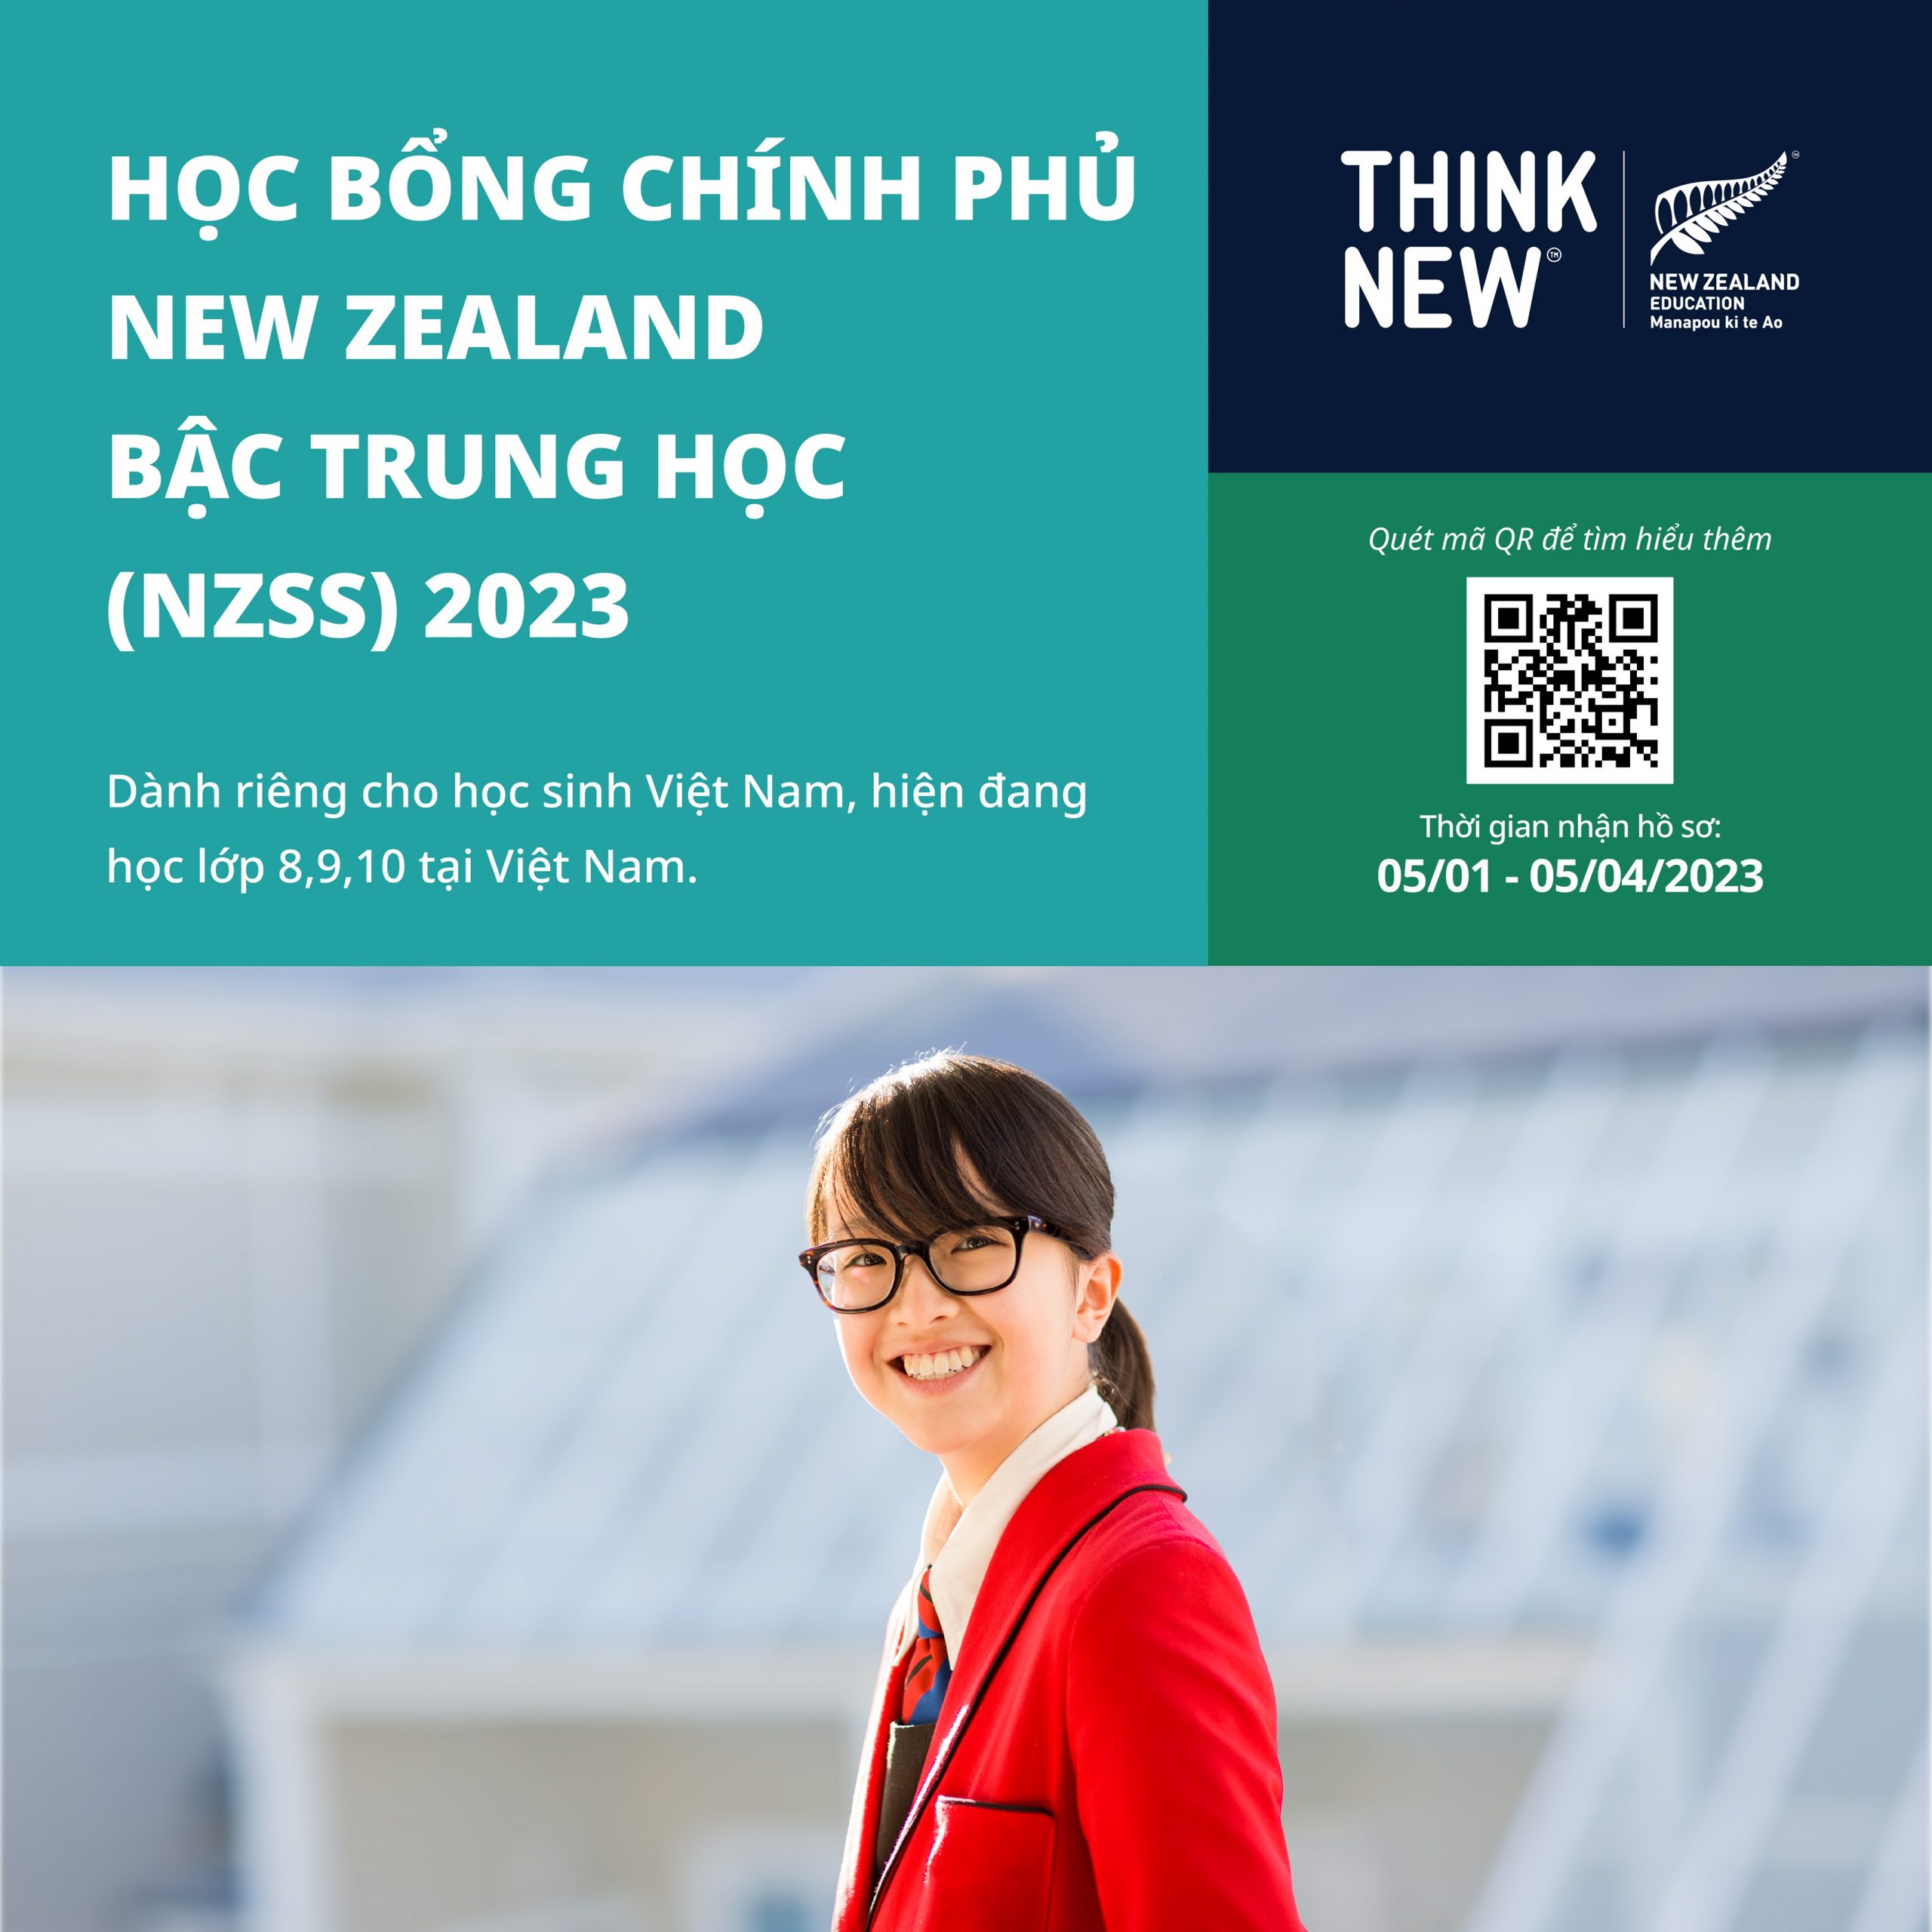 HỌC BỔNG CHÍNH PHỦ NEW ZEALAND BẬC TRUNG HỌC DÀNH CHO HỌC SINH VIỆT NAM 2023